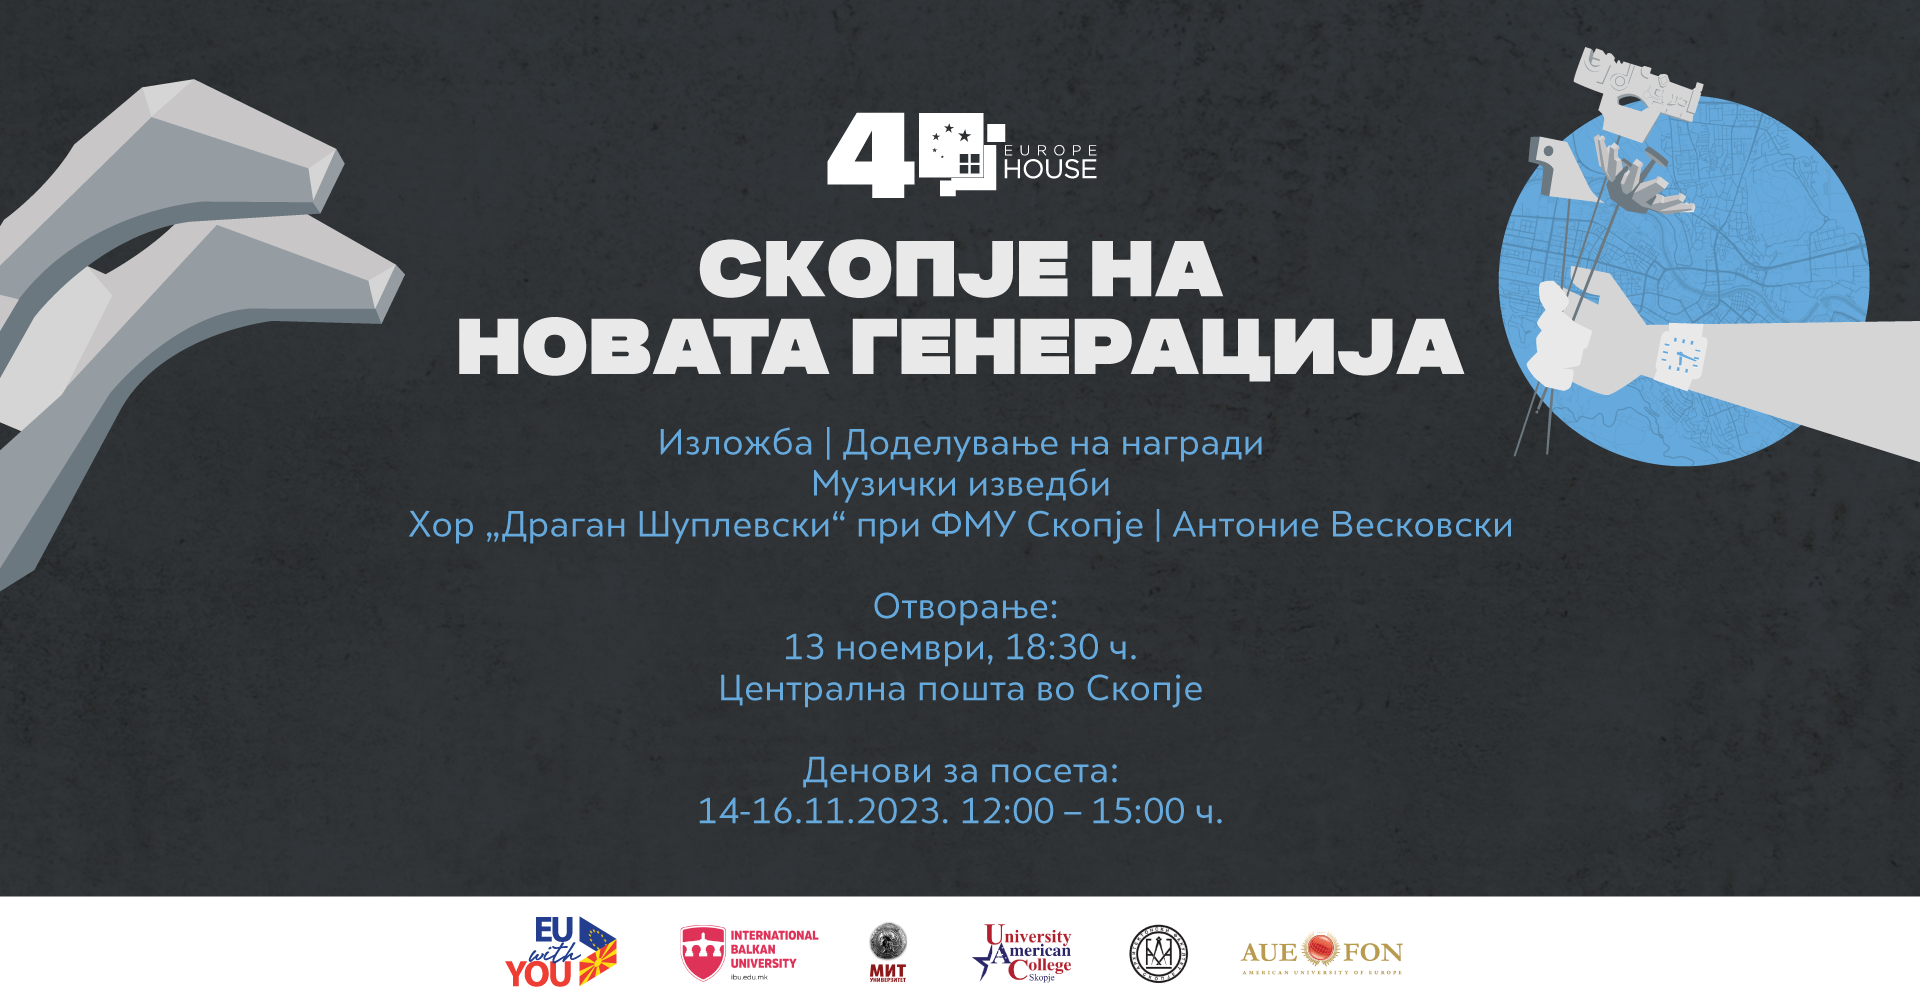 Четвртиот роденден на Јуроп Хаус Скопје со изложбата „СКОПЈЕ НА НОВАТА ГЕНЕРАЦИЈА“